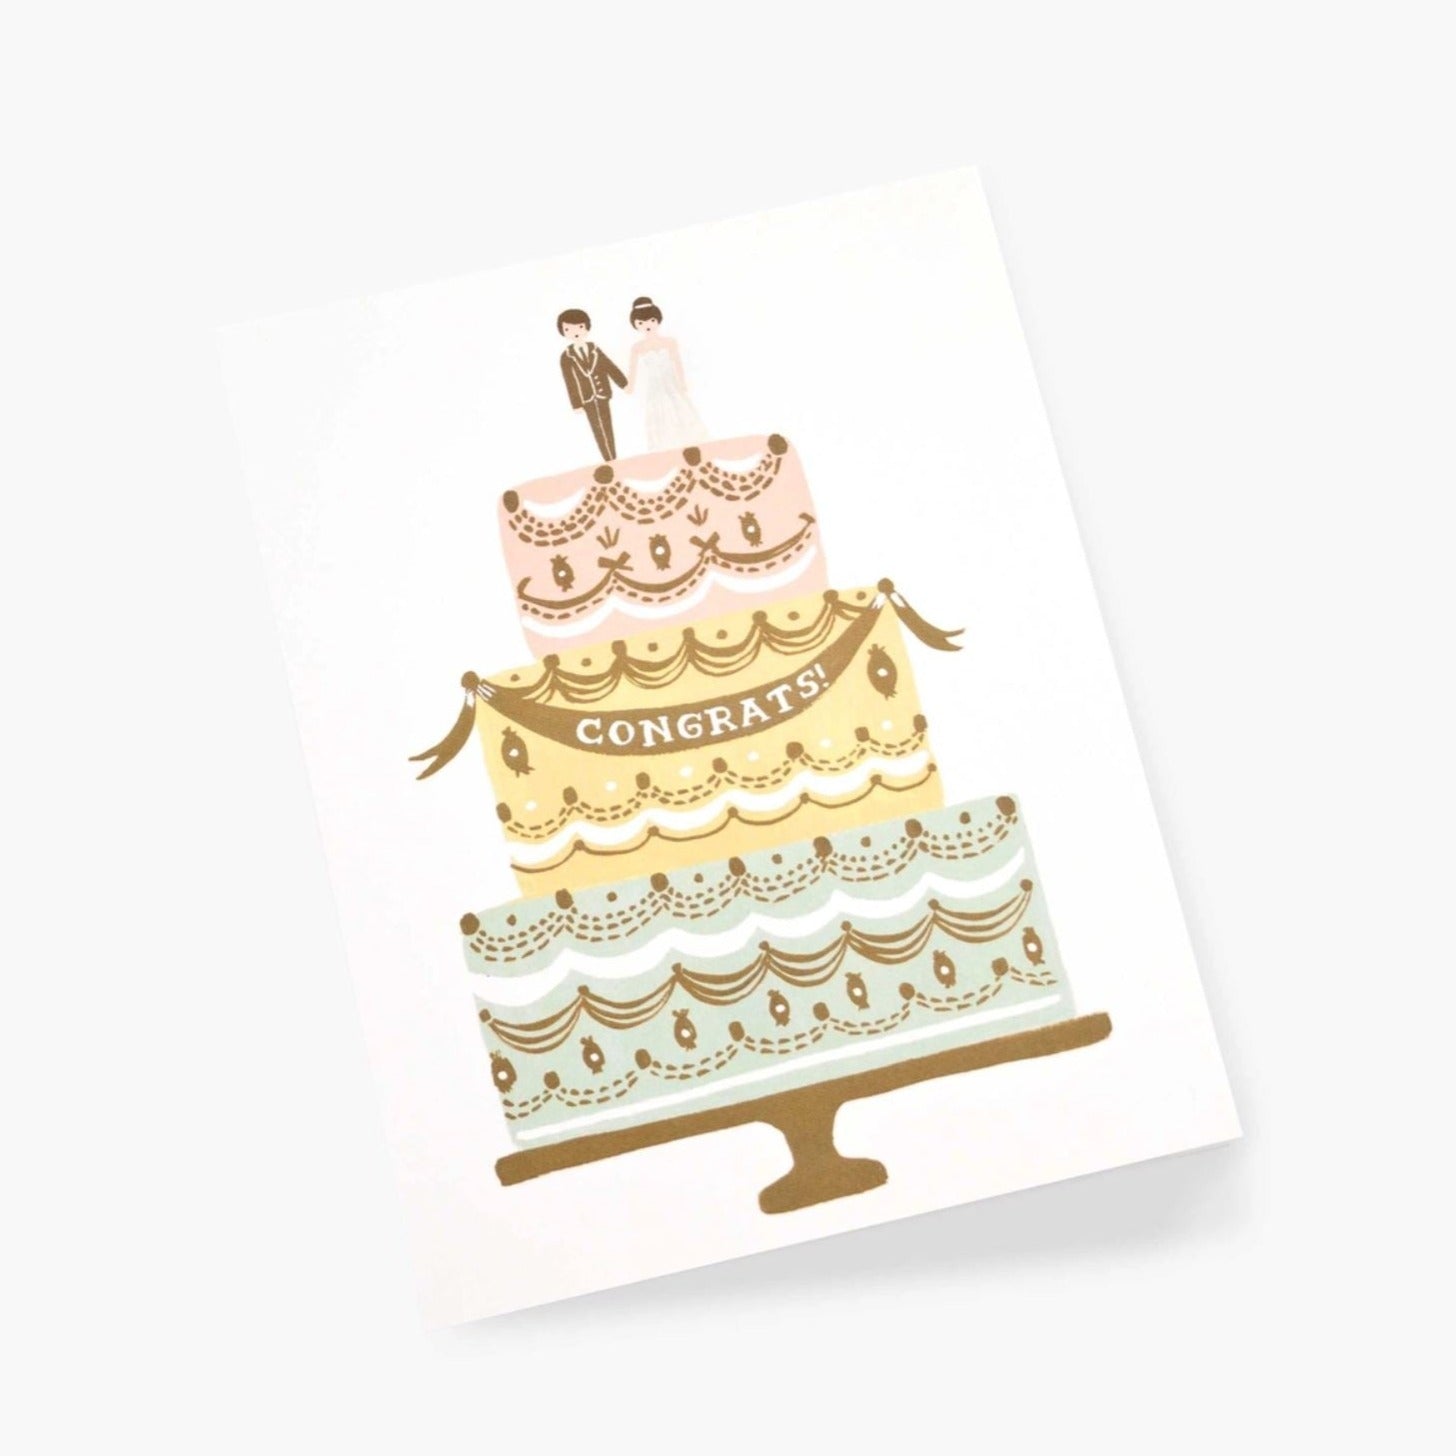 Congrats Wedding Cake